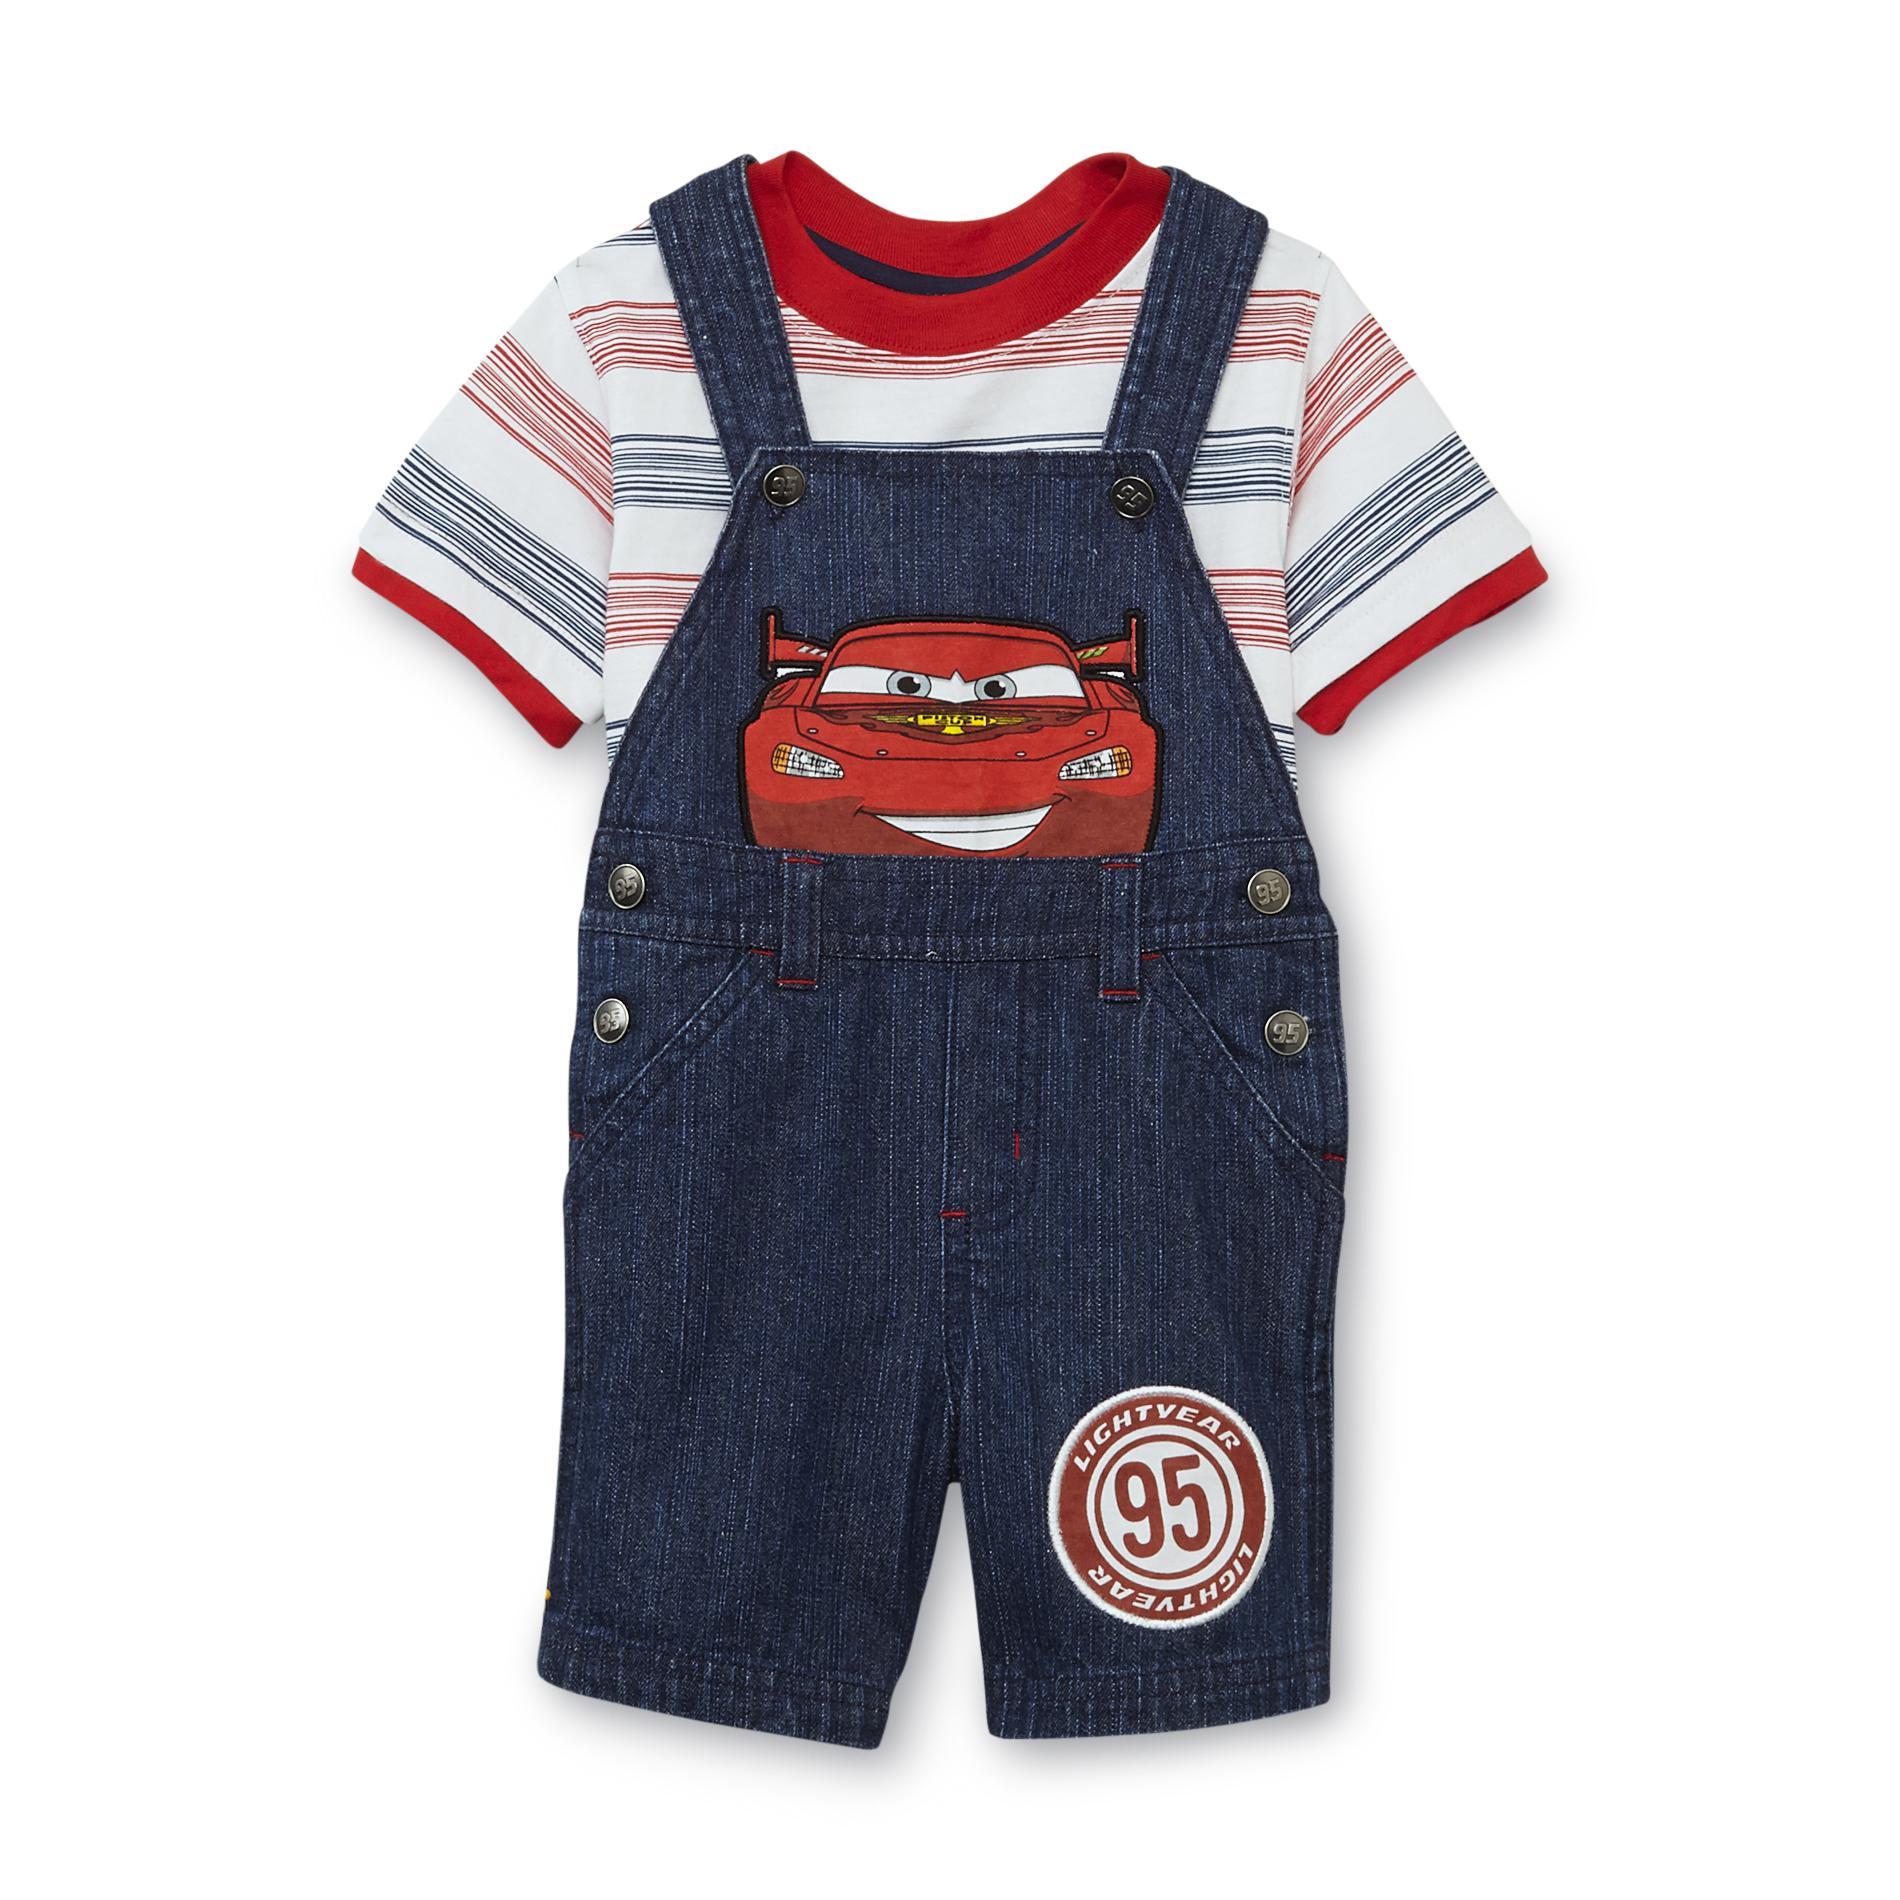 Disney Cars Infant Boy's Shortalls & T-Shirt - Lightning McQueen